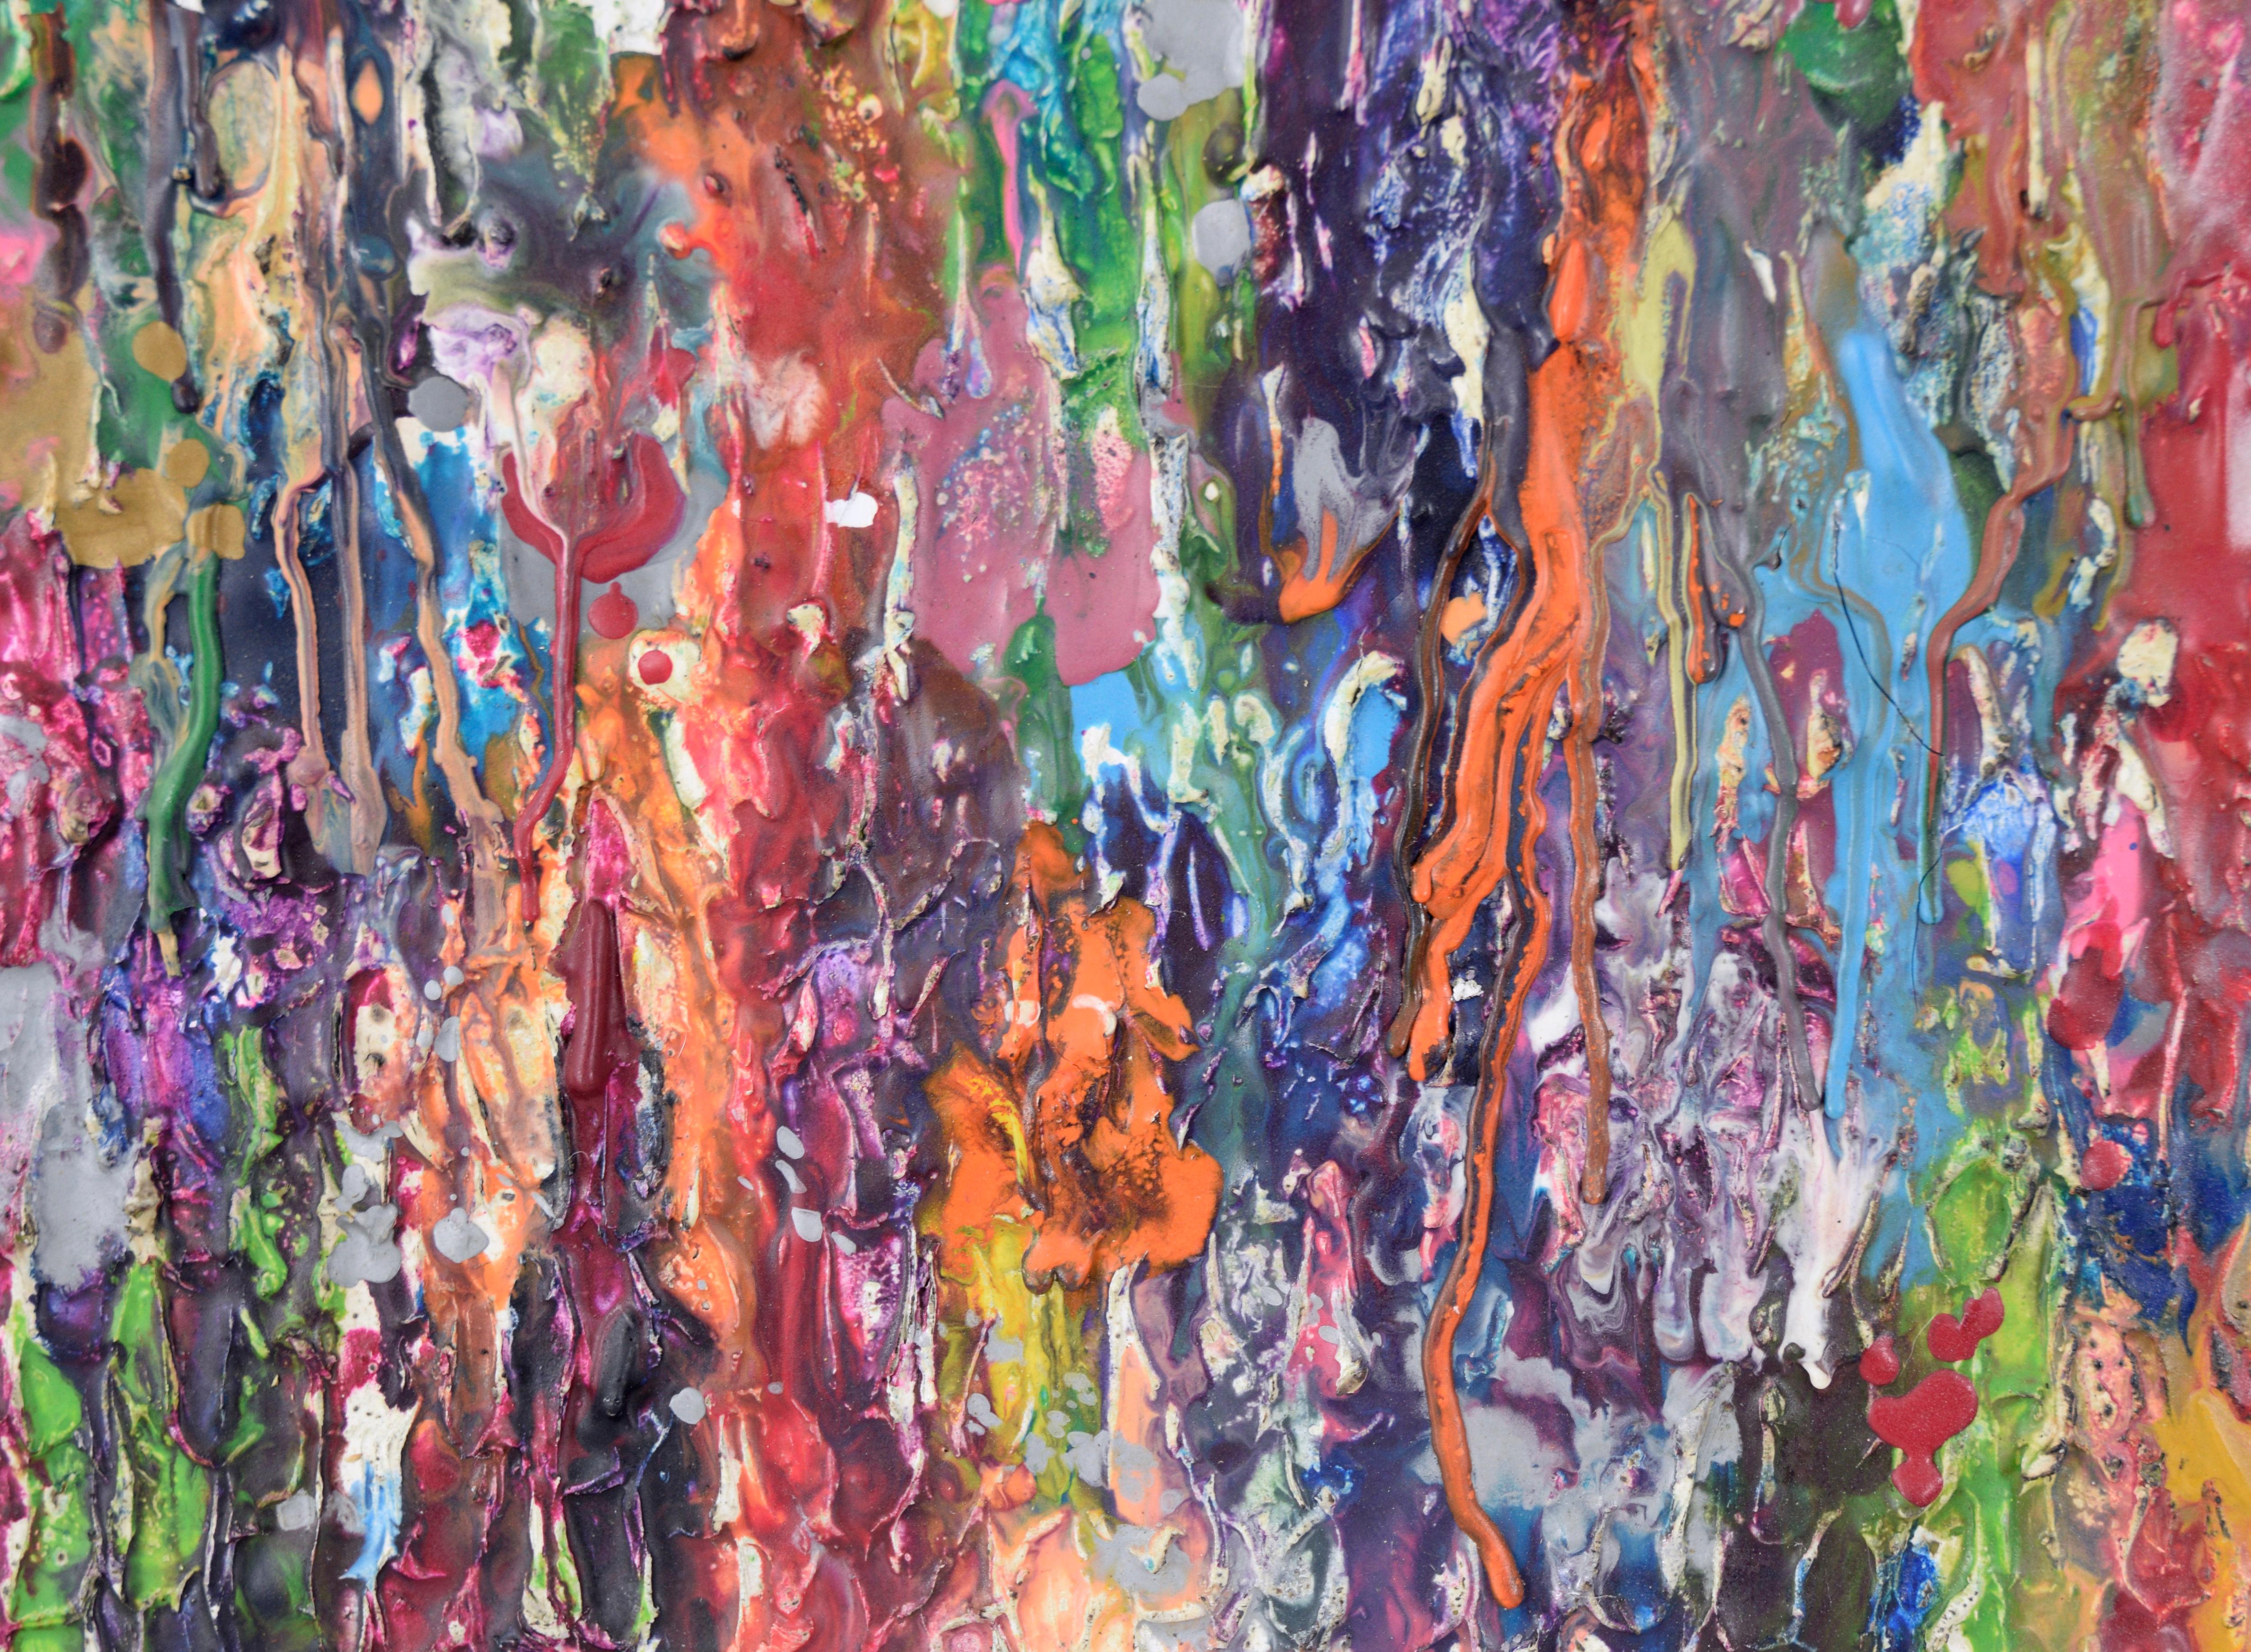 Texturierte abstrakt-expressionistische Komposition aus Gips und Acryl auf Leinwand (Abstrakter Expressionismus), Painting, von Unknown